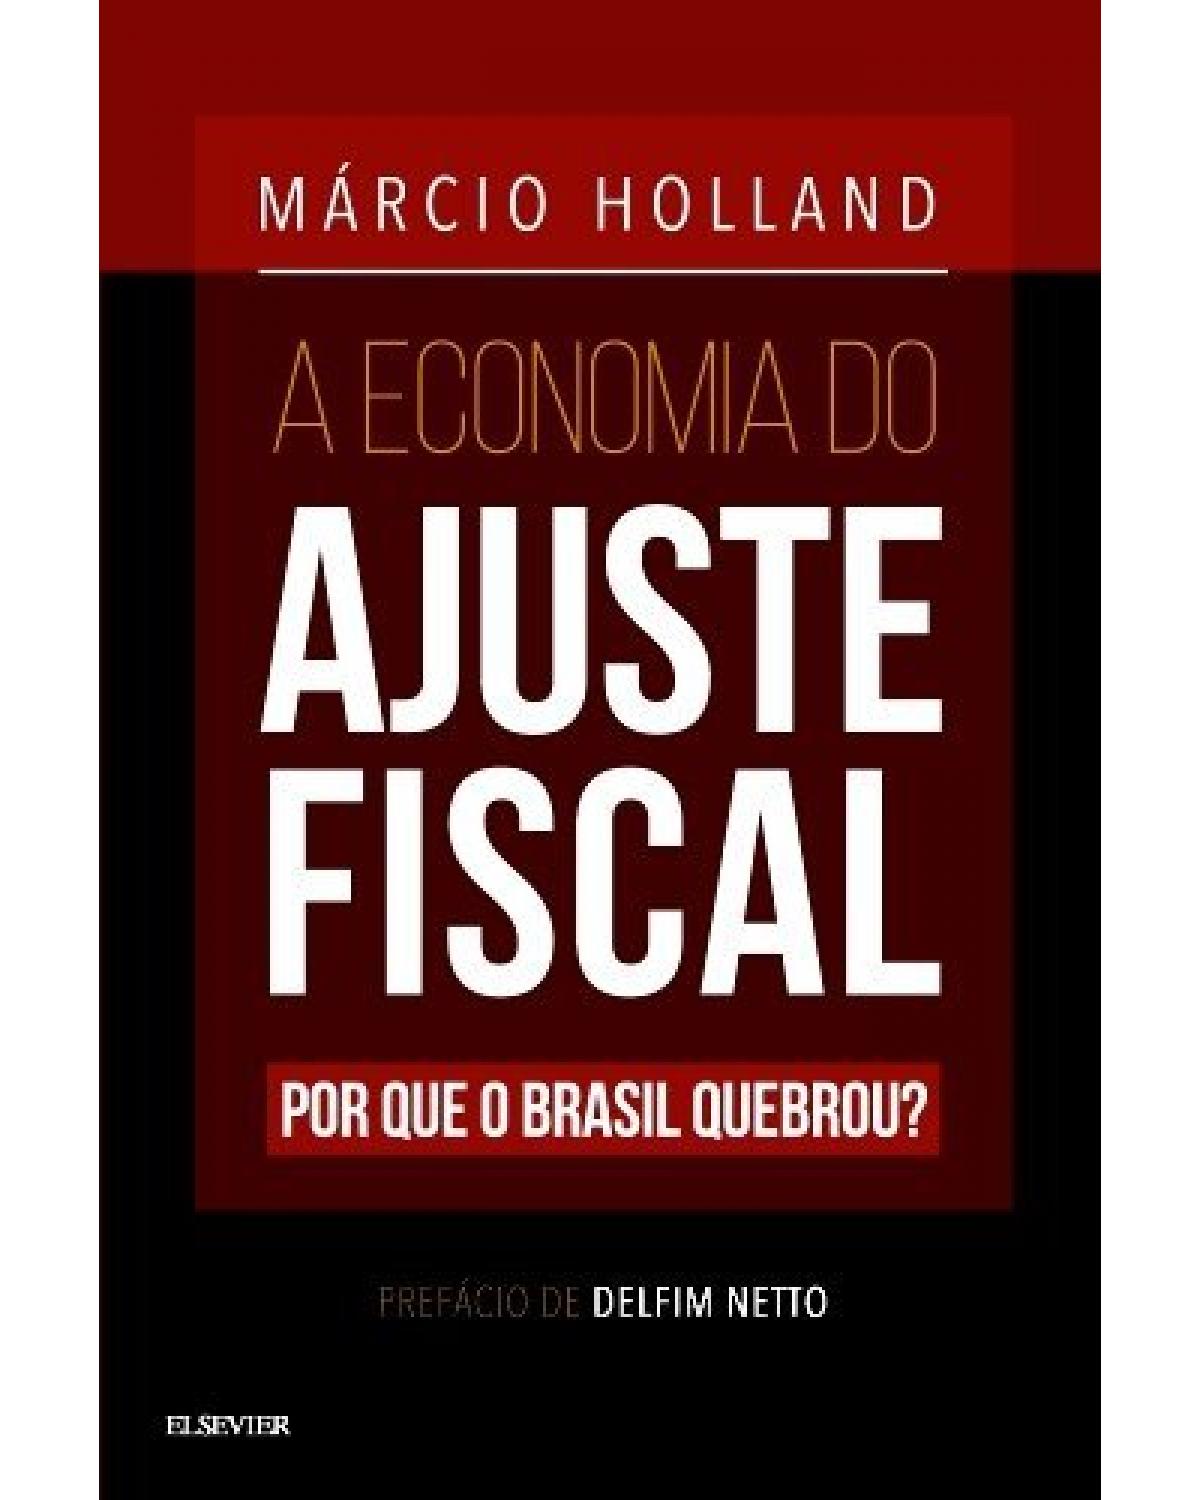 A economia do ajuste fiscal - por que o Brasil quebrou? - 1ª Edição | 2016